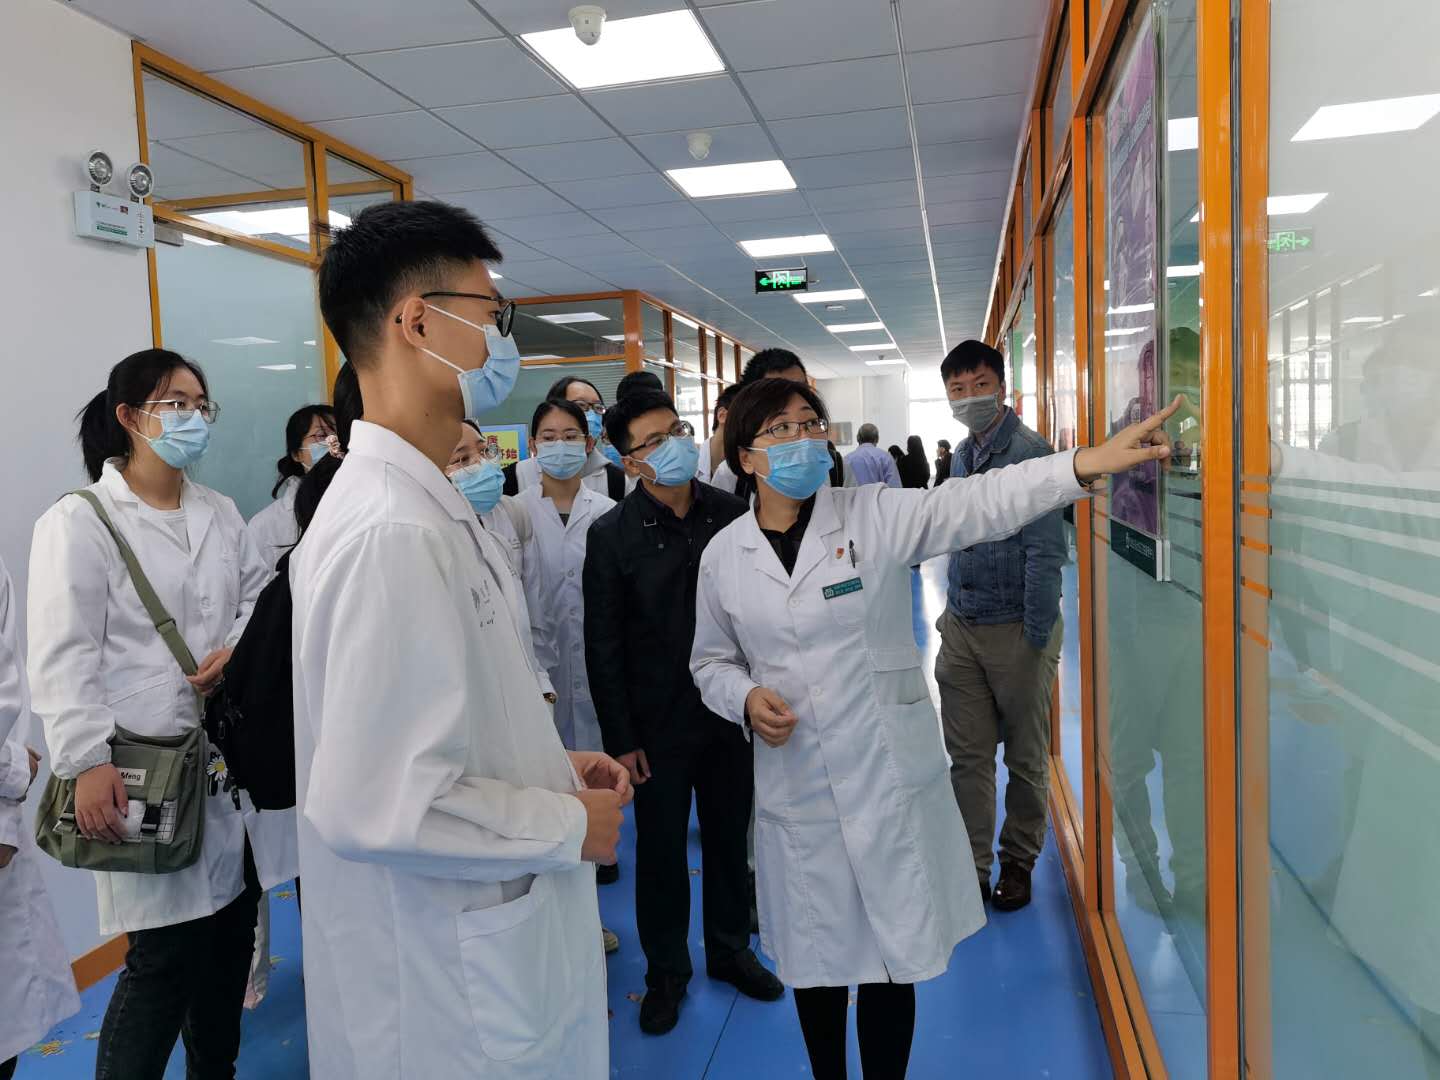 生物工程学院与成都医学院生物科学与技术学院开展交流座谈 - 综合新闻 - 重庆大学新闻网